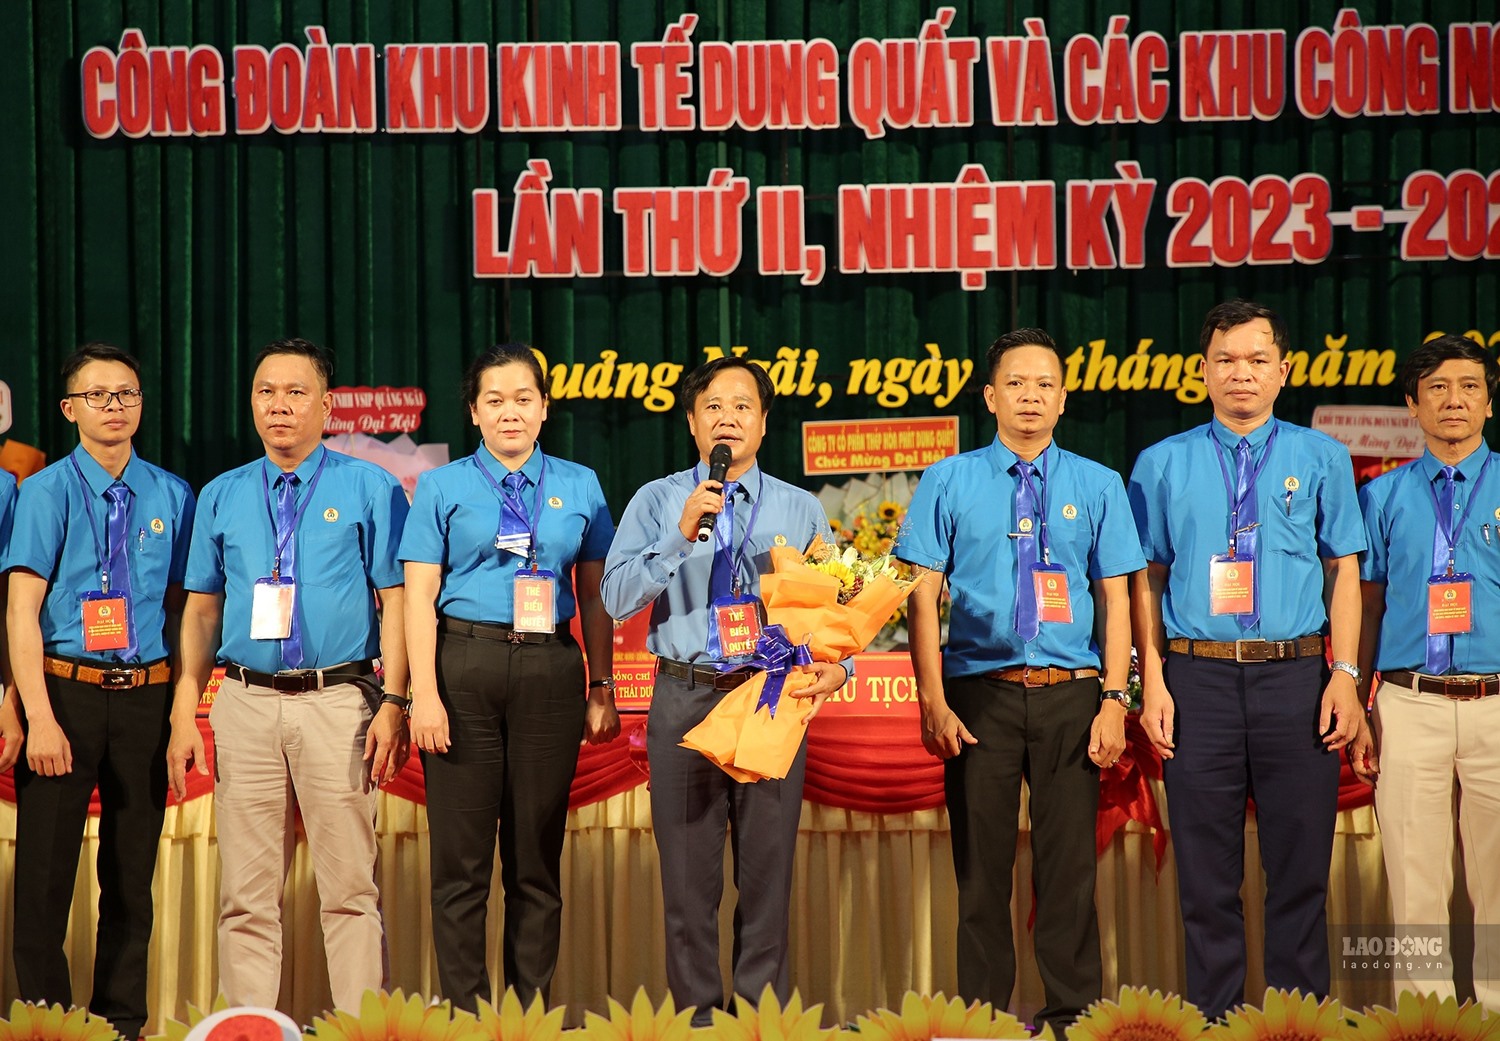 Ông Phạm Thái Dương tái đắc cử Chủ tịch Công đoàn Khu kinh tế Dung Quất và các Khu công nghiệp Quảng Ngãi. Ảnh: Ngọc Viên